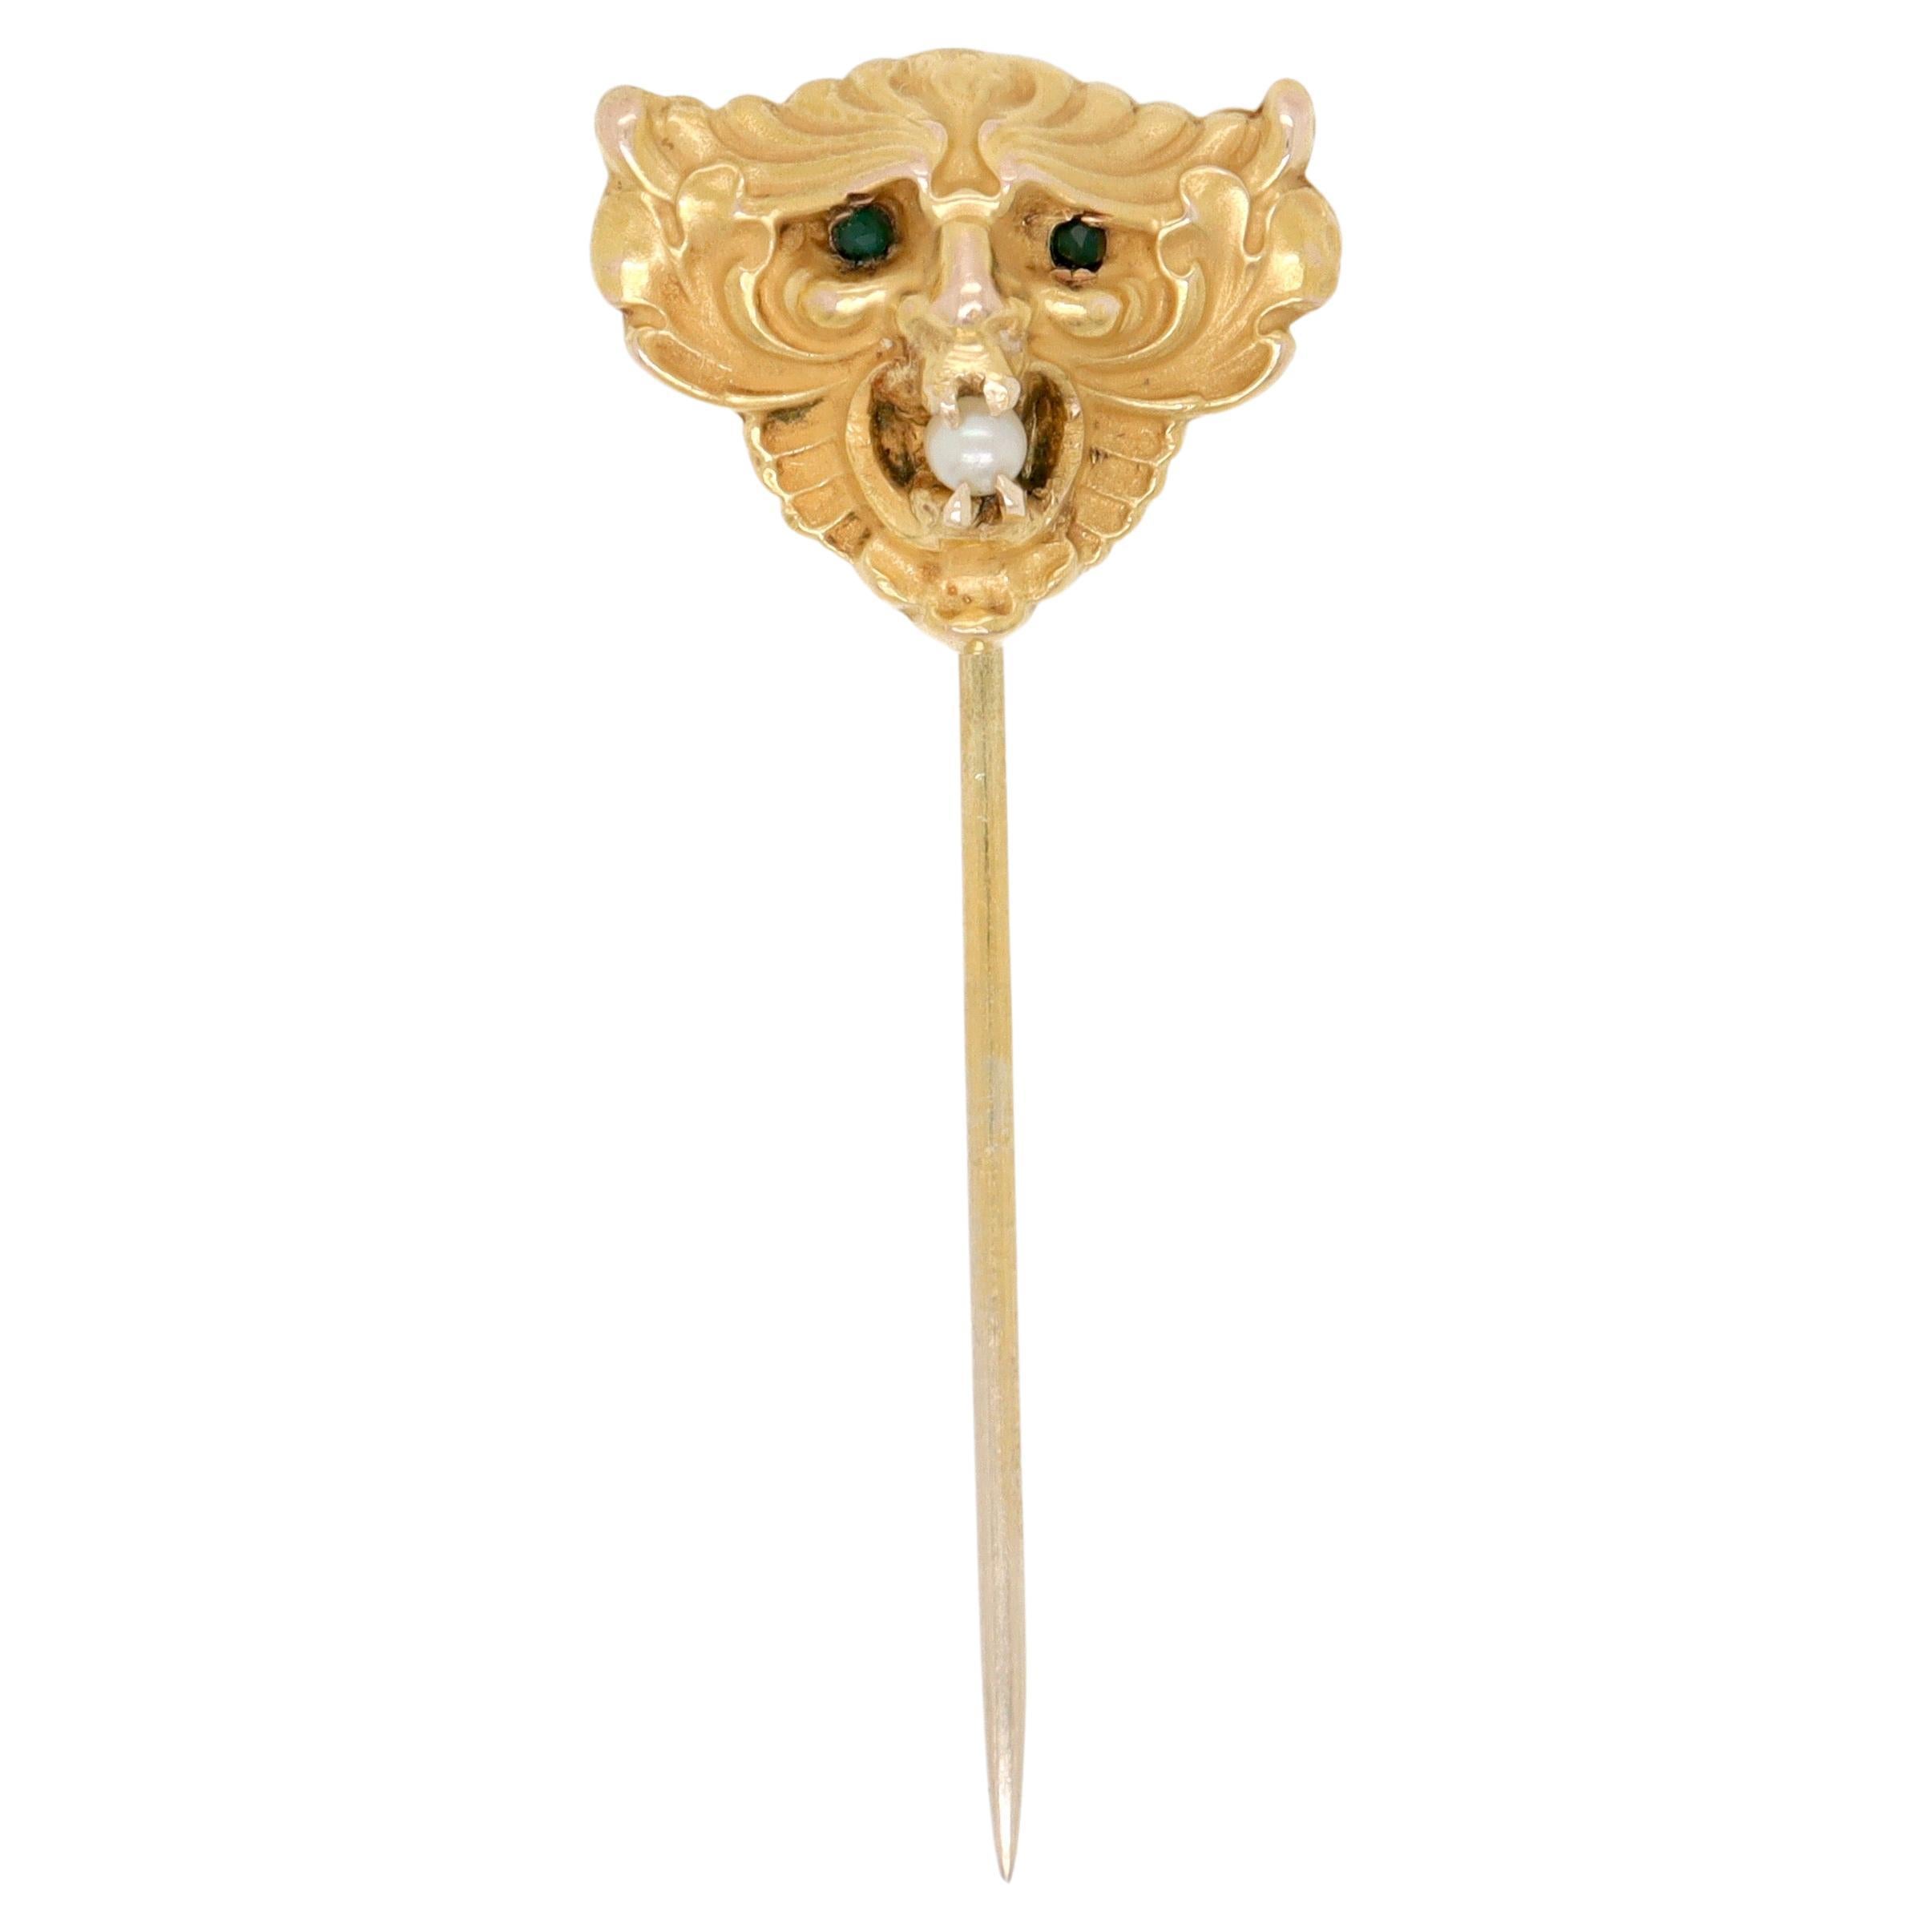 Antique Art Nouveau Devil's Mask 14K Gold & Pearl Stick Pin or Lapel Pin